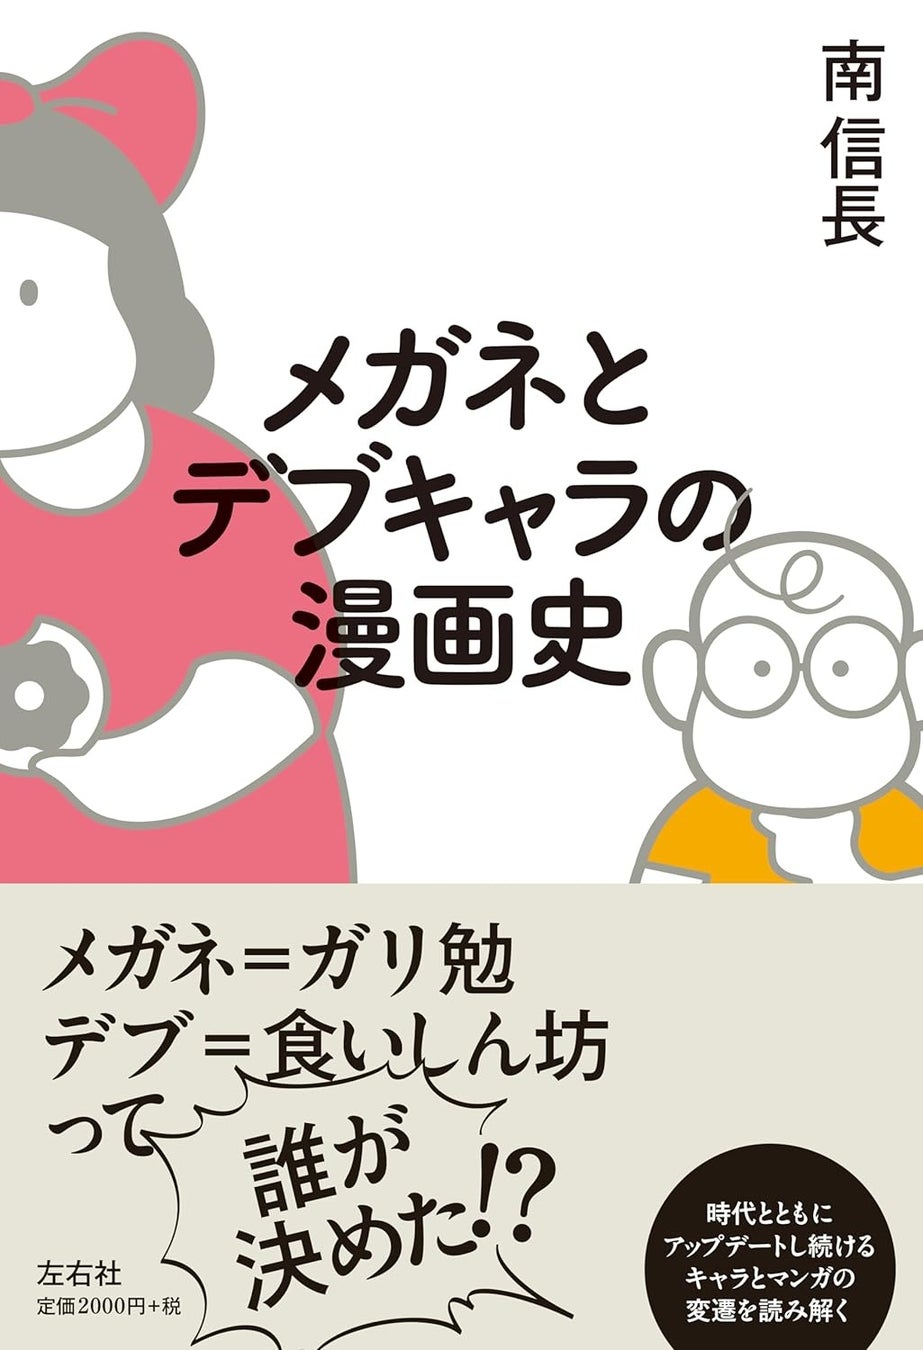 【新刊】ただのガリ勉、食いしん坊なんて一人もいない!!!『メガネとデブキャラの漫画史』4月末〜発売開始